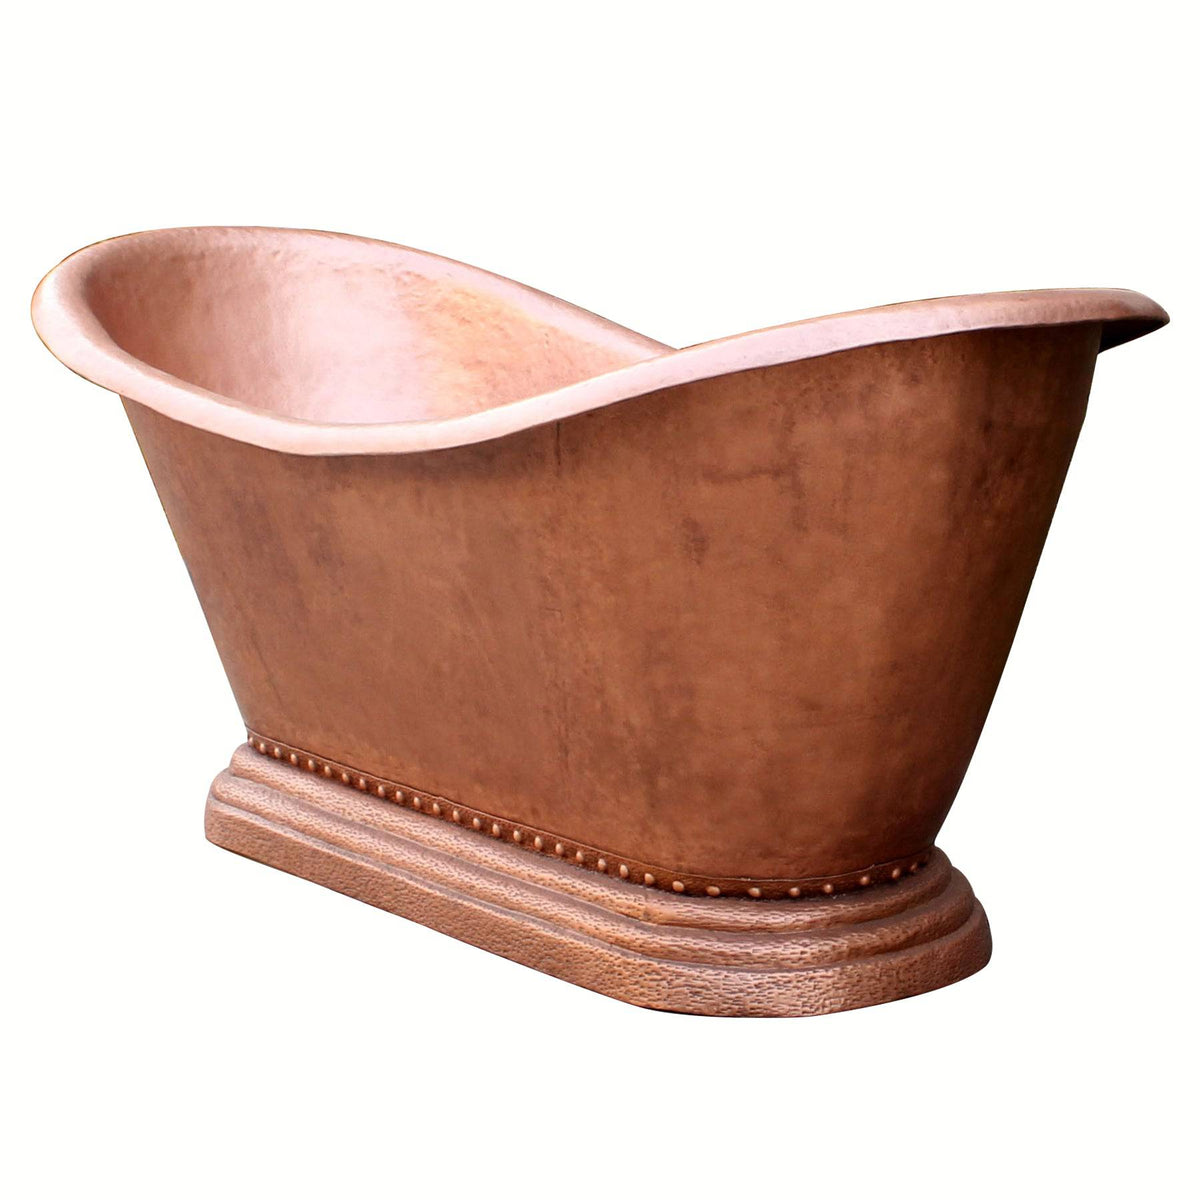 Fobest Handmade Double-Slipper Custom Copper Bathtub FBT-3